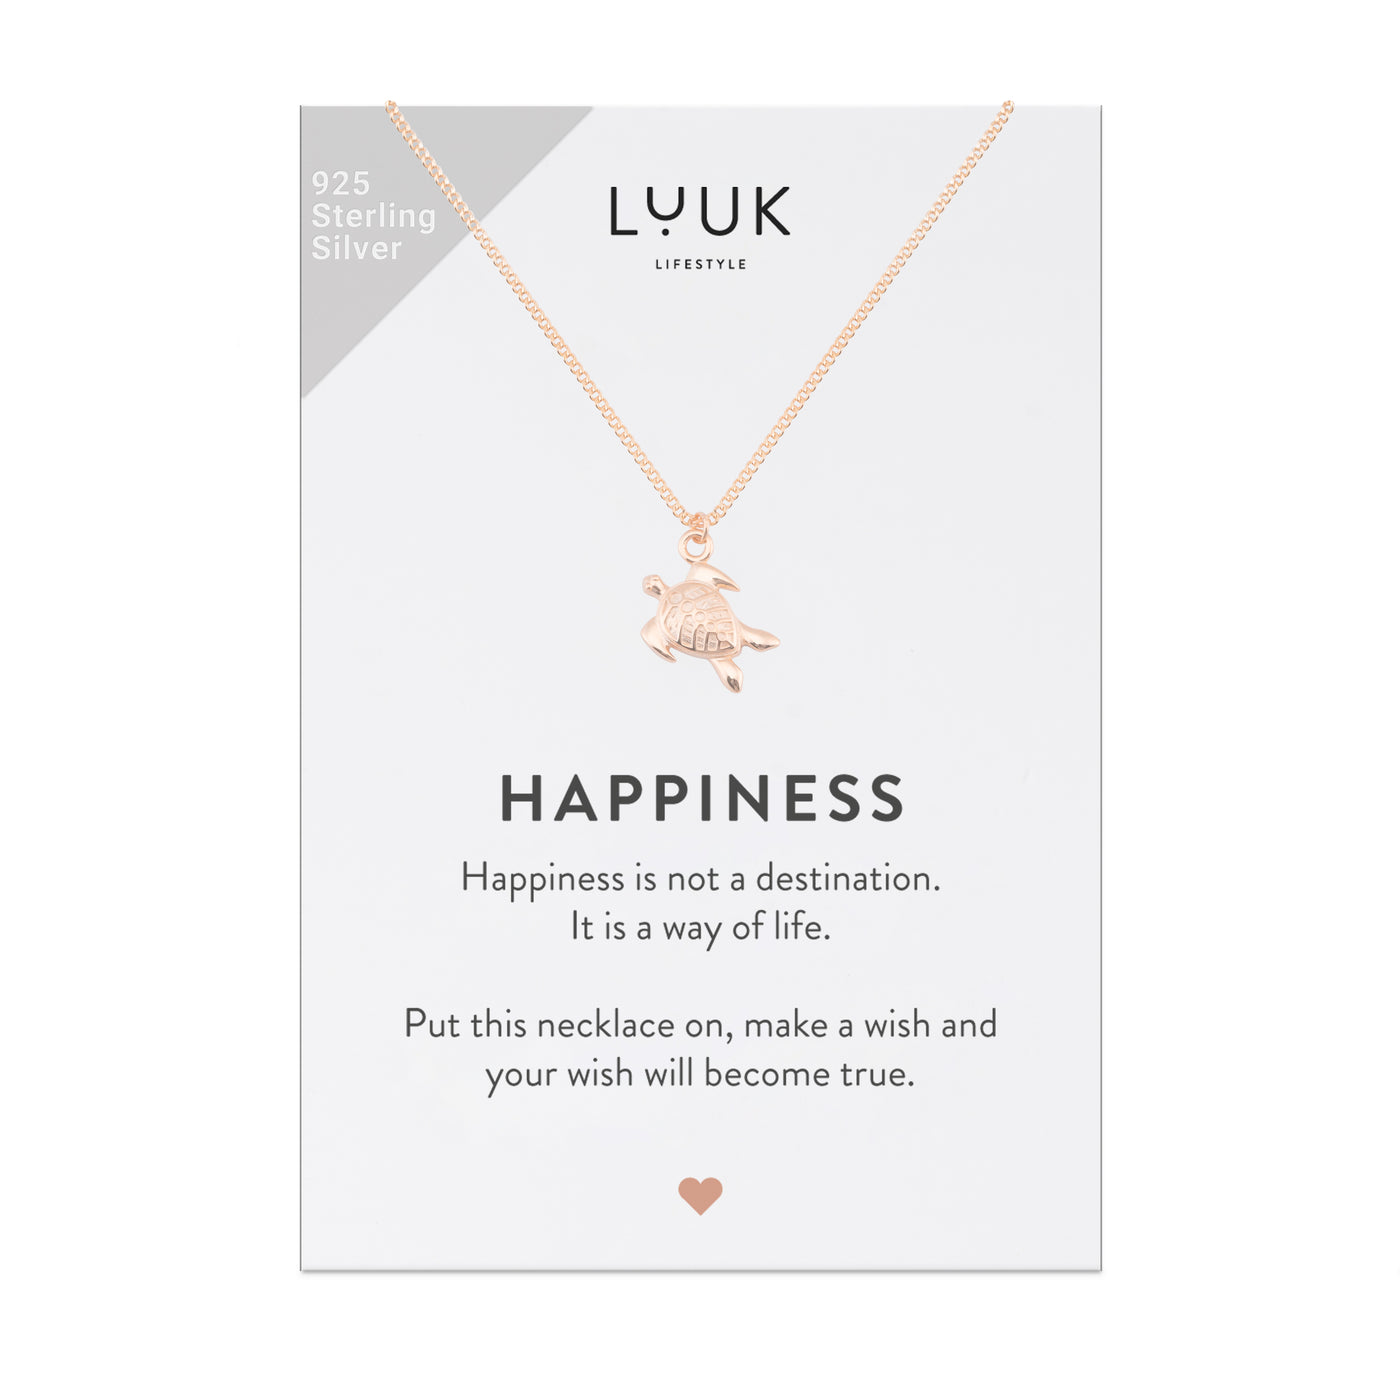 Rosegoldene Halskette mit Schildkröten Anhänger auf Happiness Spruchkarte von Luuk Lifestyle 